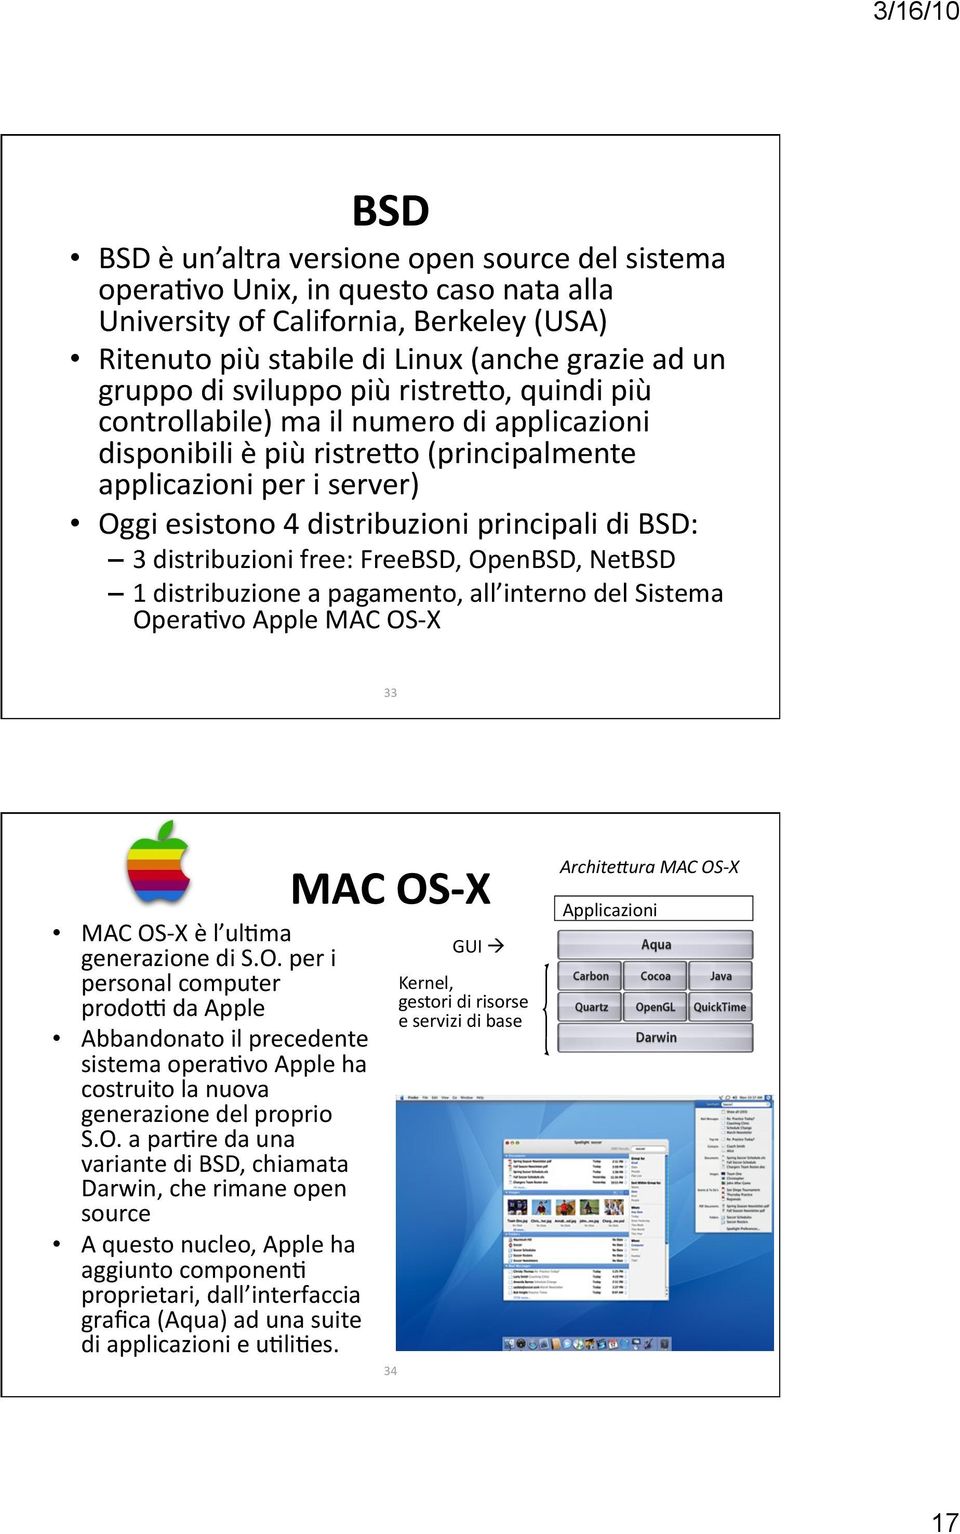 distribuzioni free: FreeBSD, OpenBSD, NetBSD 1 distribuzione a pagamento, all interno del Sistema Opera5vo Apple MAC OS X 33 MAC OS X è l ul5ma generazione di S.O. per i personal computer prodo: da Apple Abbandonato il precedente sistema opera5vo Apple ha costruito la nuova generazione del proprio S.